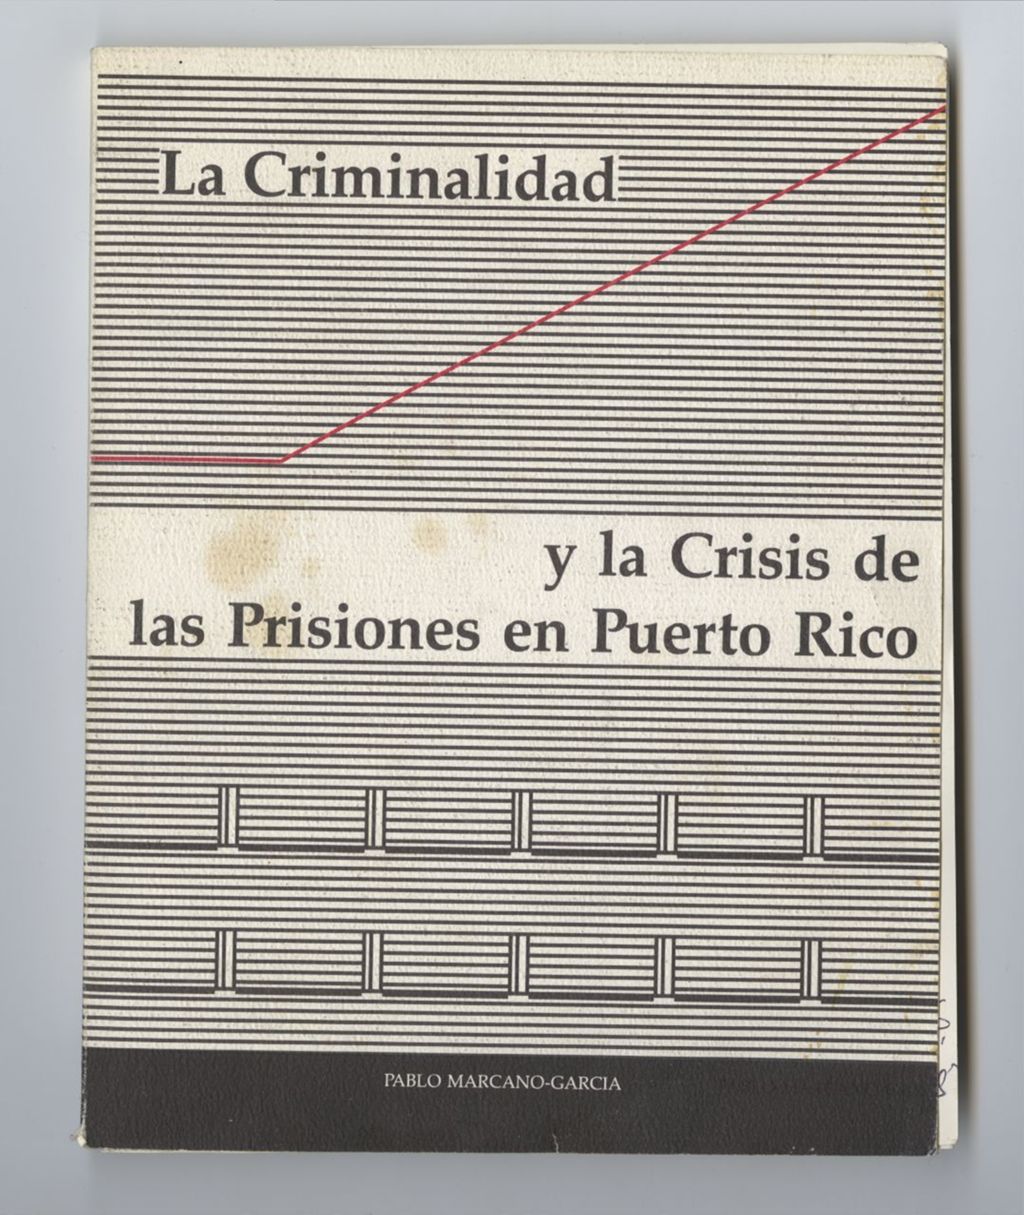 Miniature of La Criminalidad y la Crisis de las Priones en Puerto Rico (Front and back)